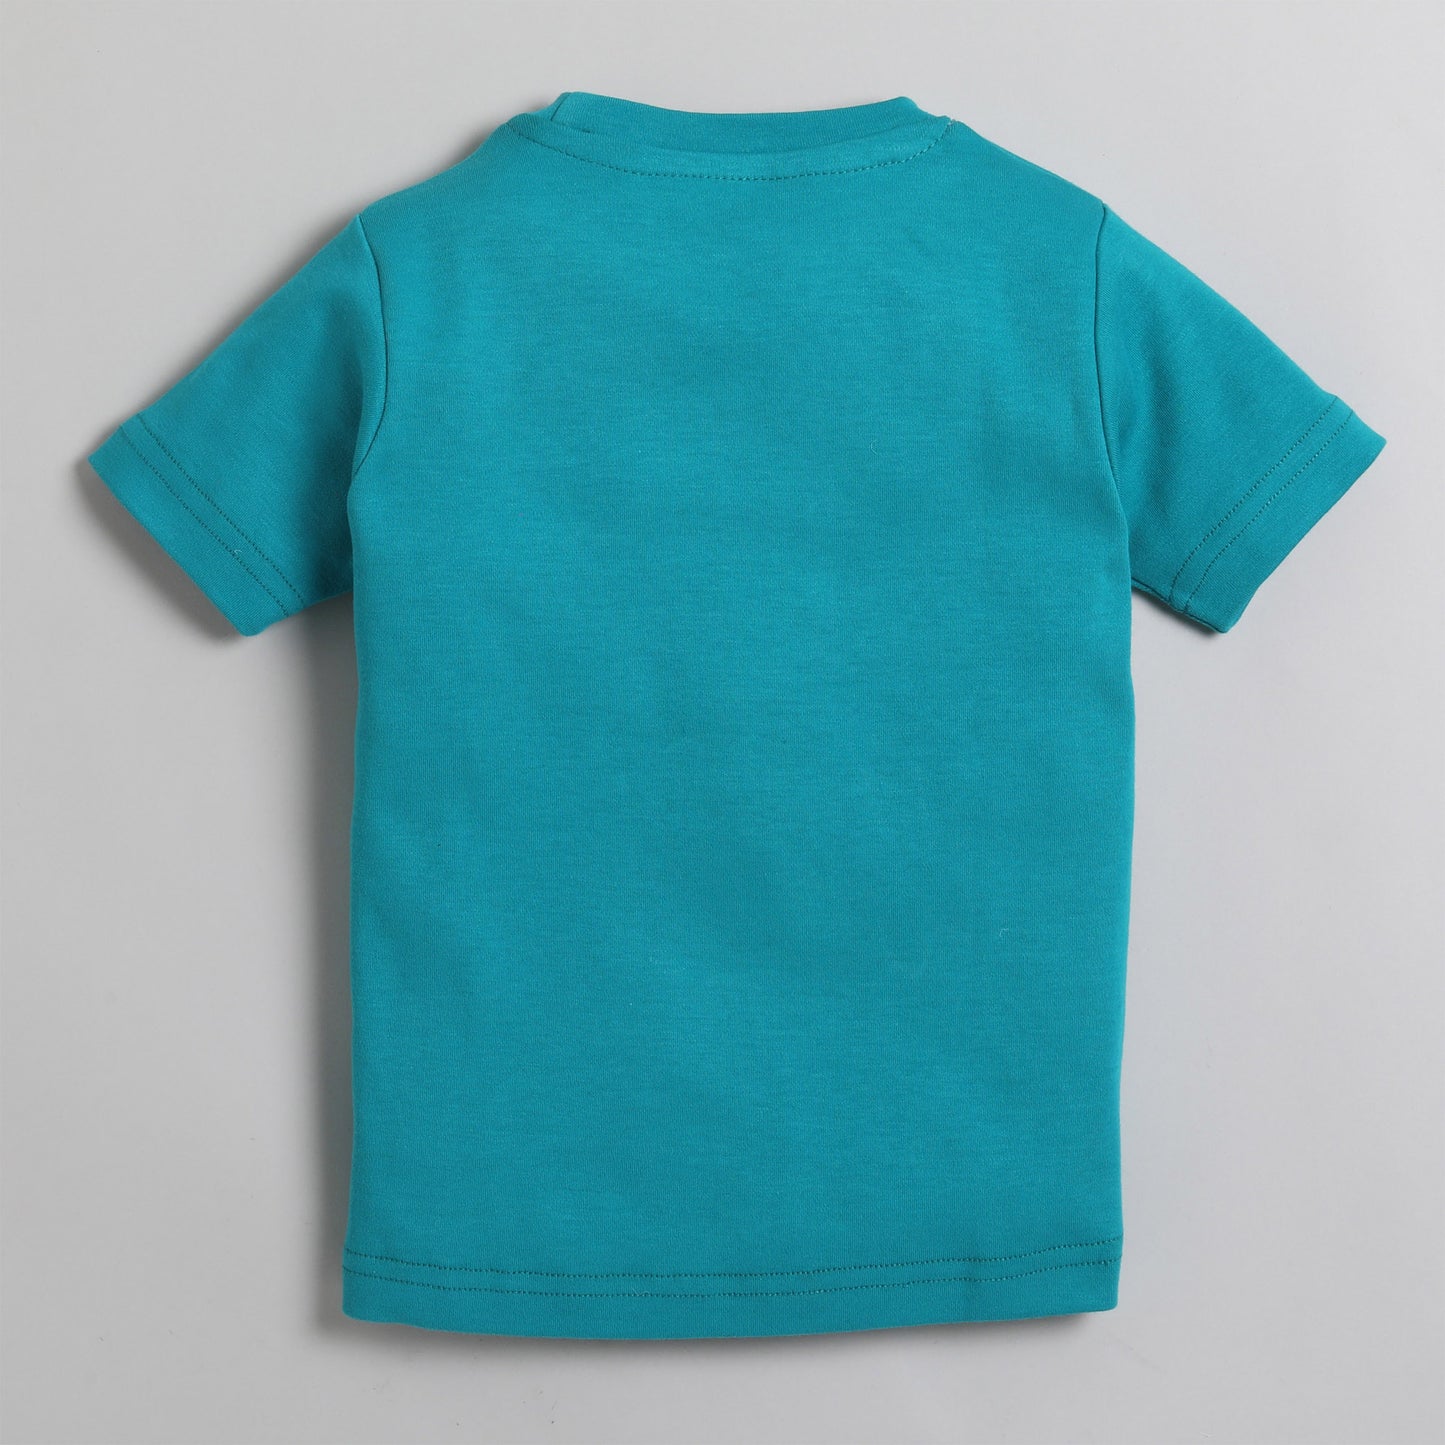 Polka Tots Half Sleeve T-Shirt With Crocodile Pocket - Blue